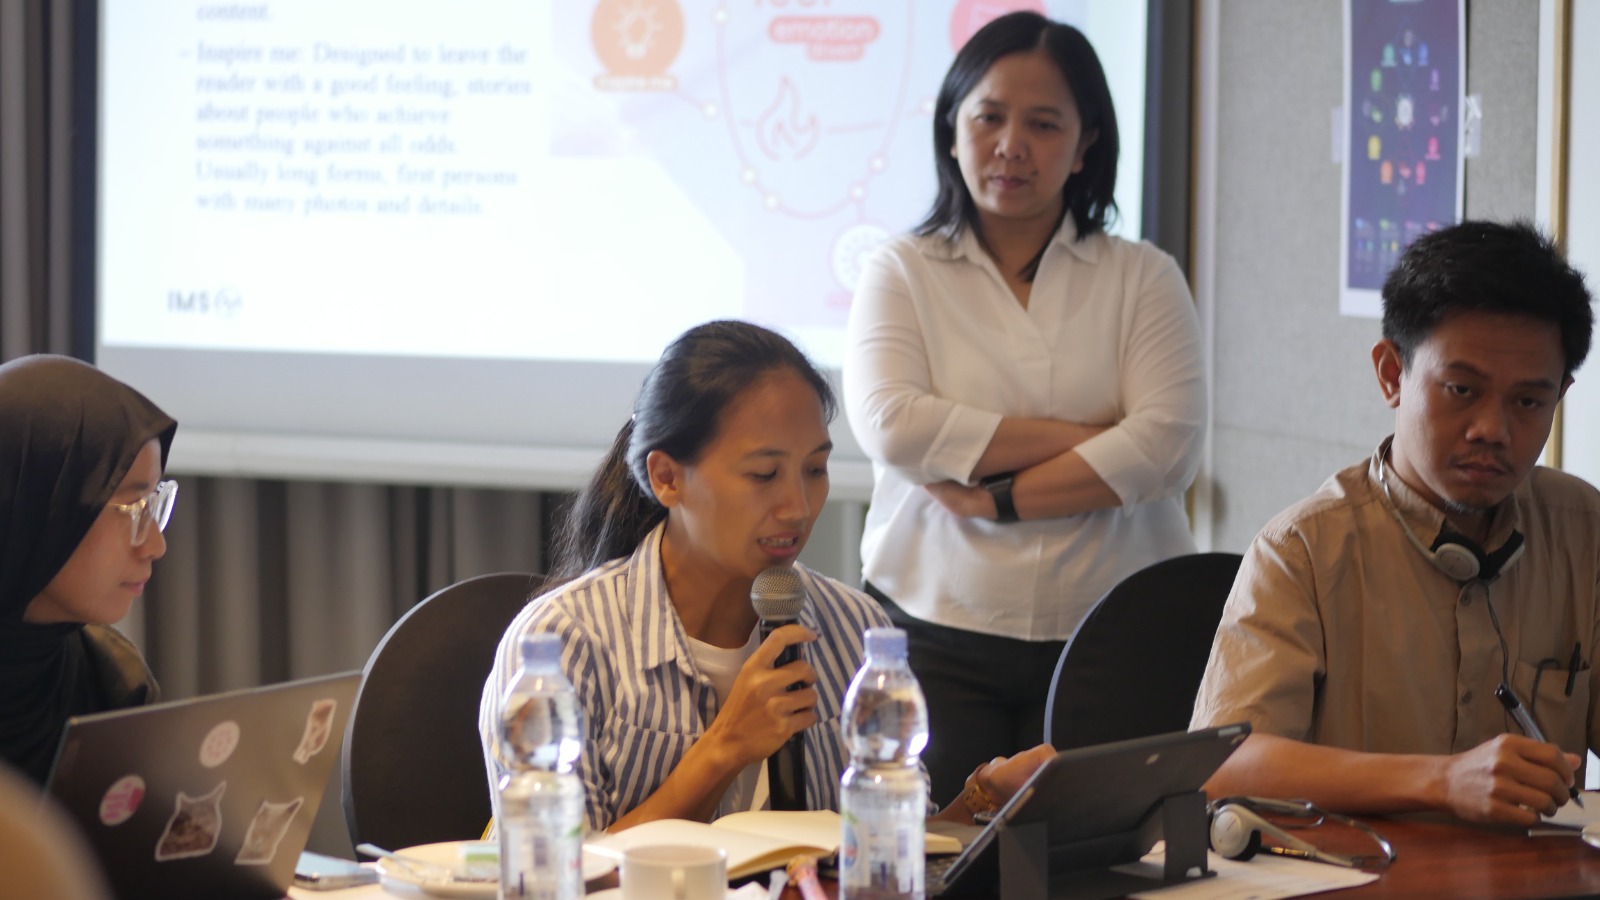 Eva Danayanti, Program Manager IMS di Indonesia (belakang) saat memberikan materi pelatihan kepada pengelola media lokal dan tersegmentasi di Yogyakarta.